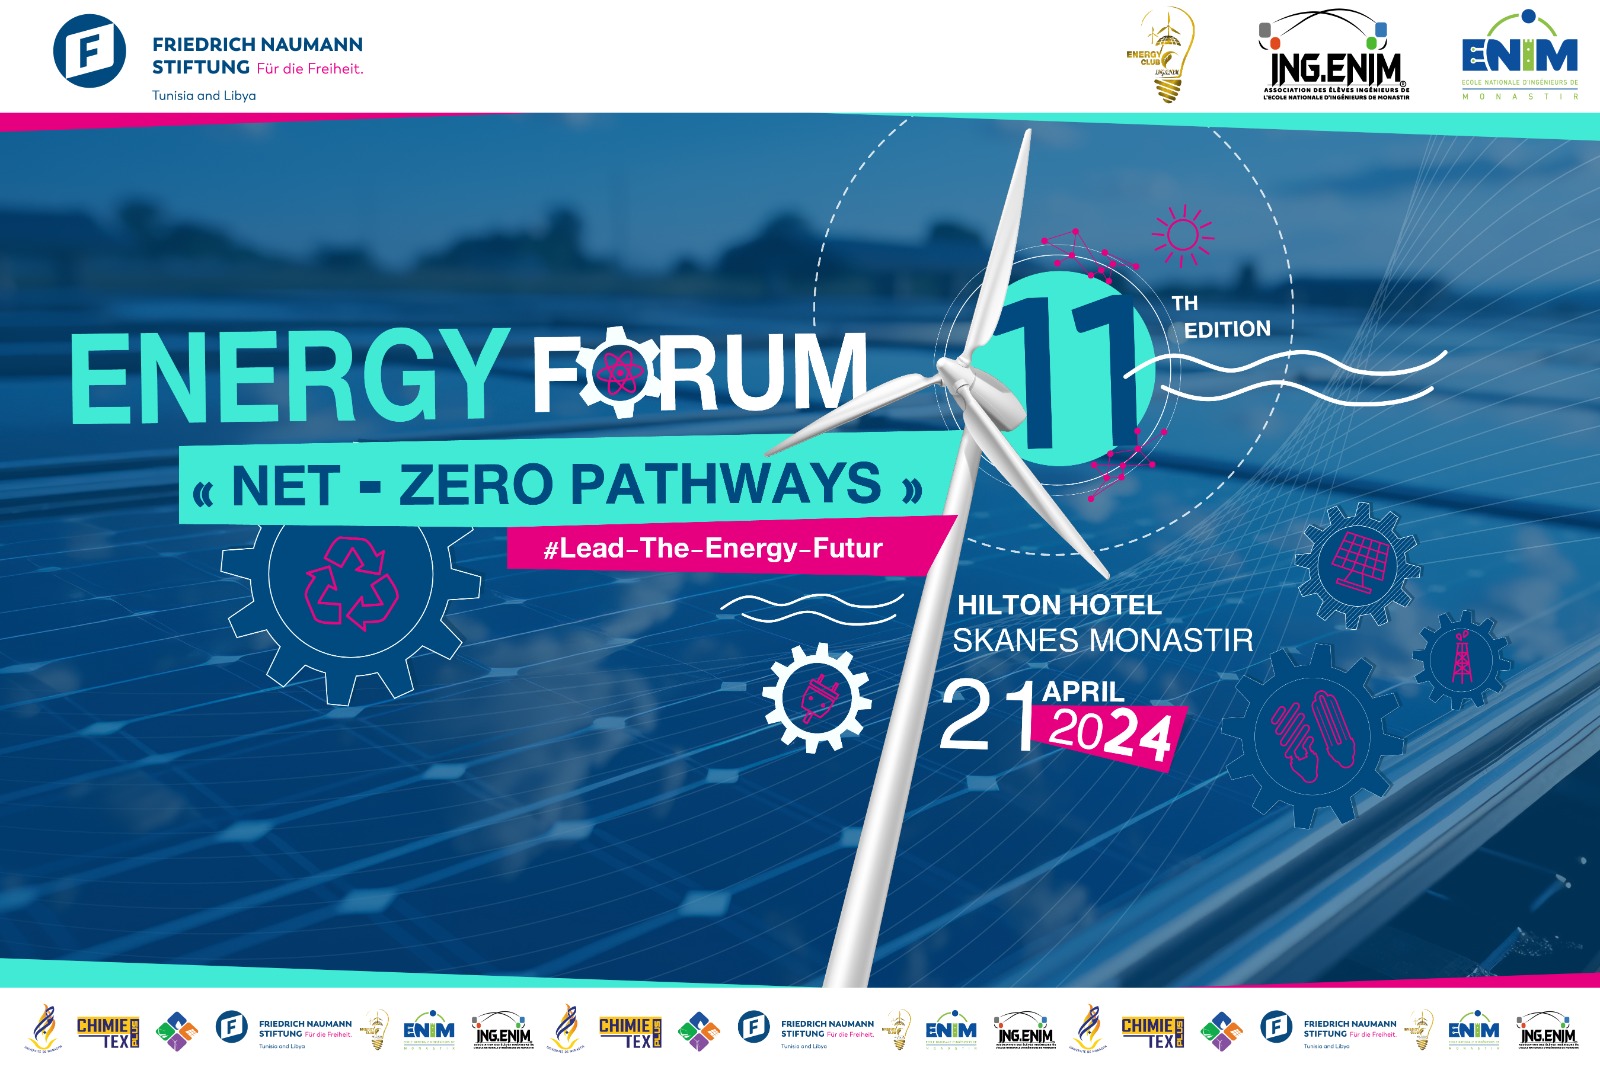 Energy Forum “Net-Zero Pathways“ 